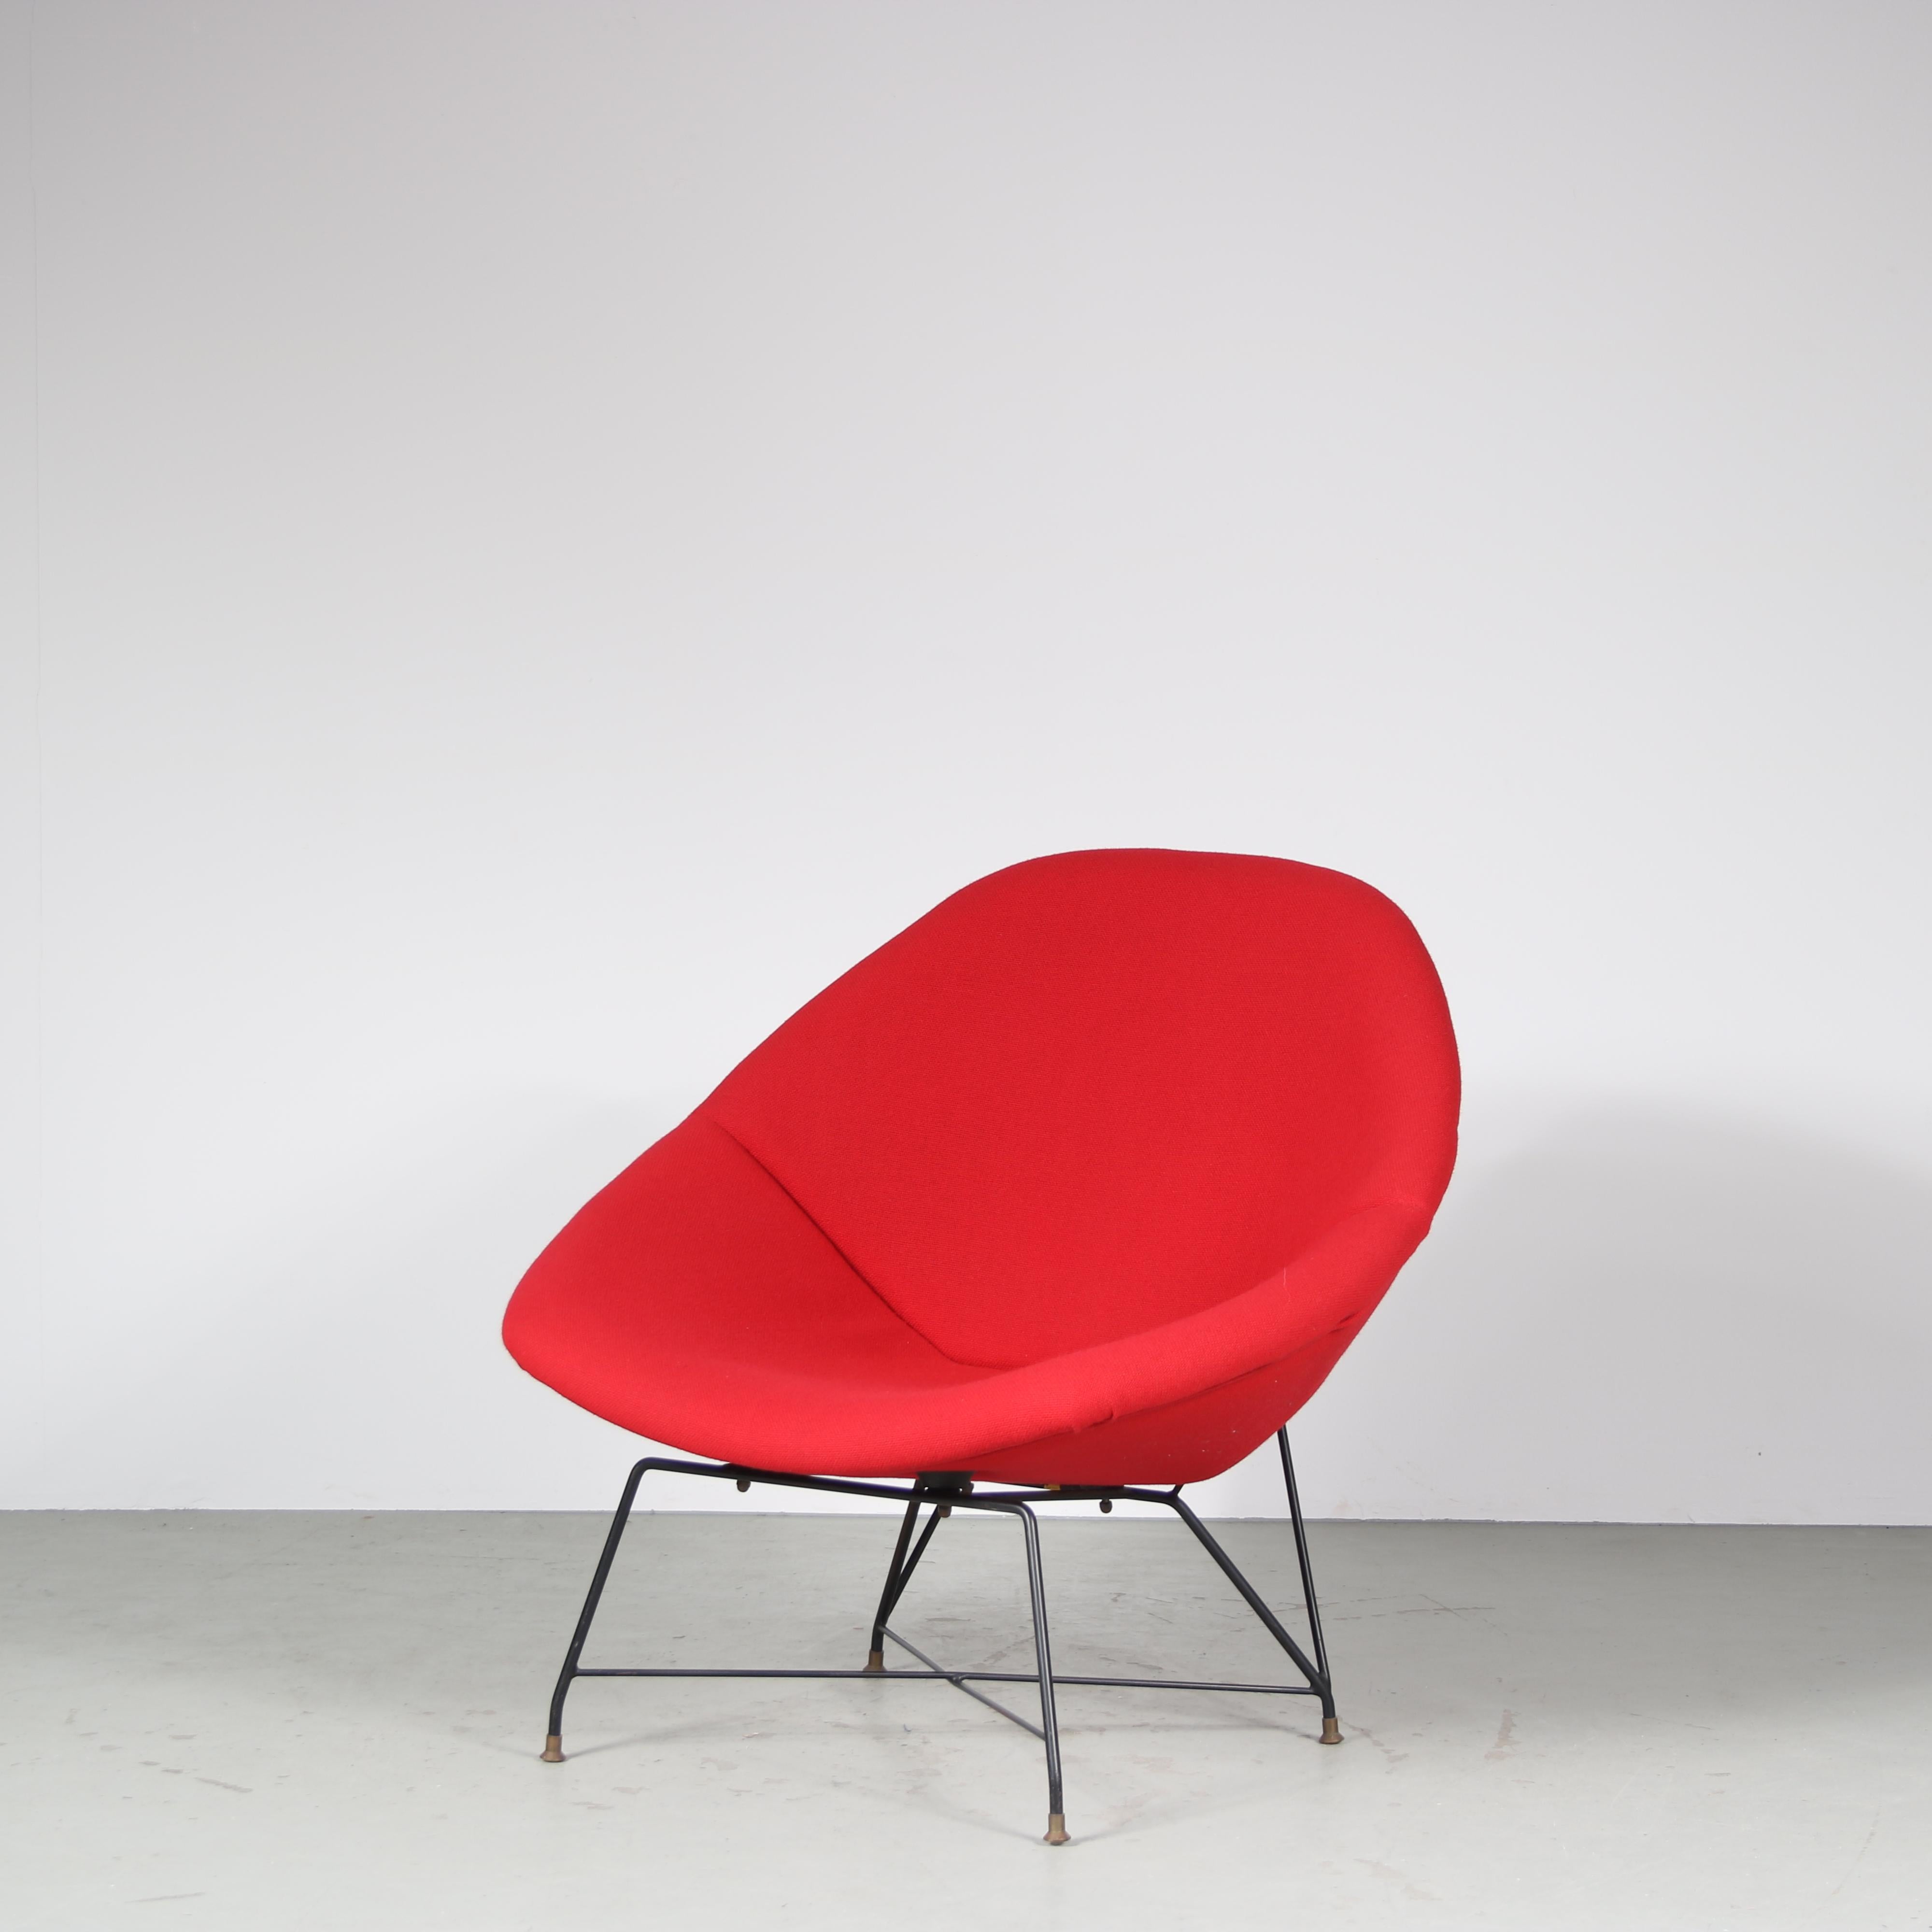 Un fauteuil impressionnant d'Augusto Bozzi, fabriqué par Saporiti en Italie en 1954.

Il s'agit d'une pièce très rare et très recherchée, le modèle s'appelle 